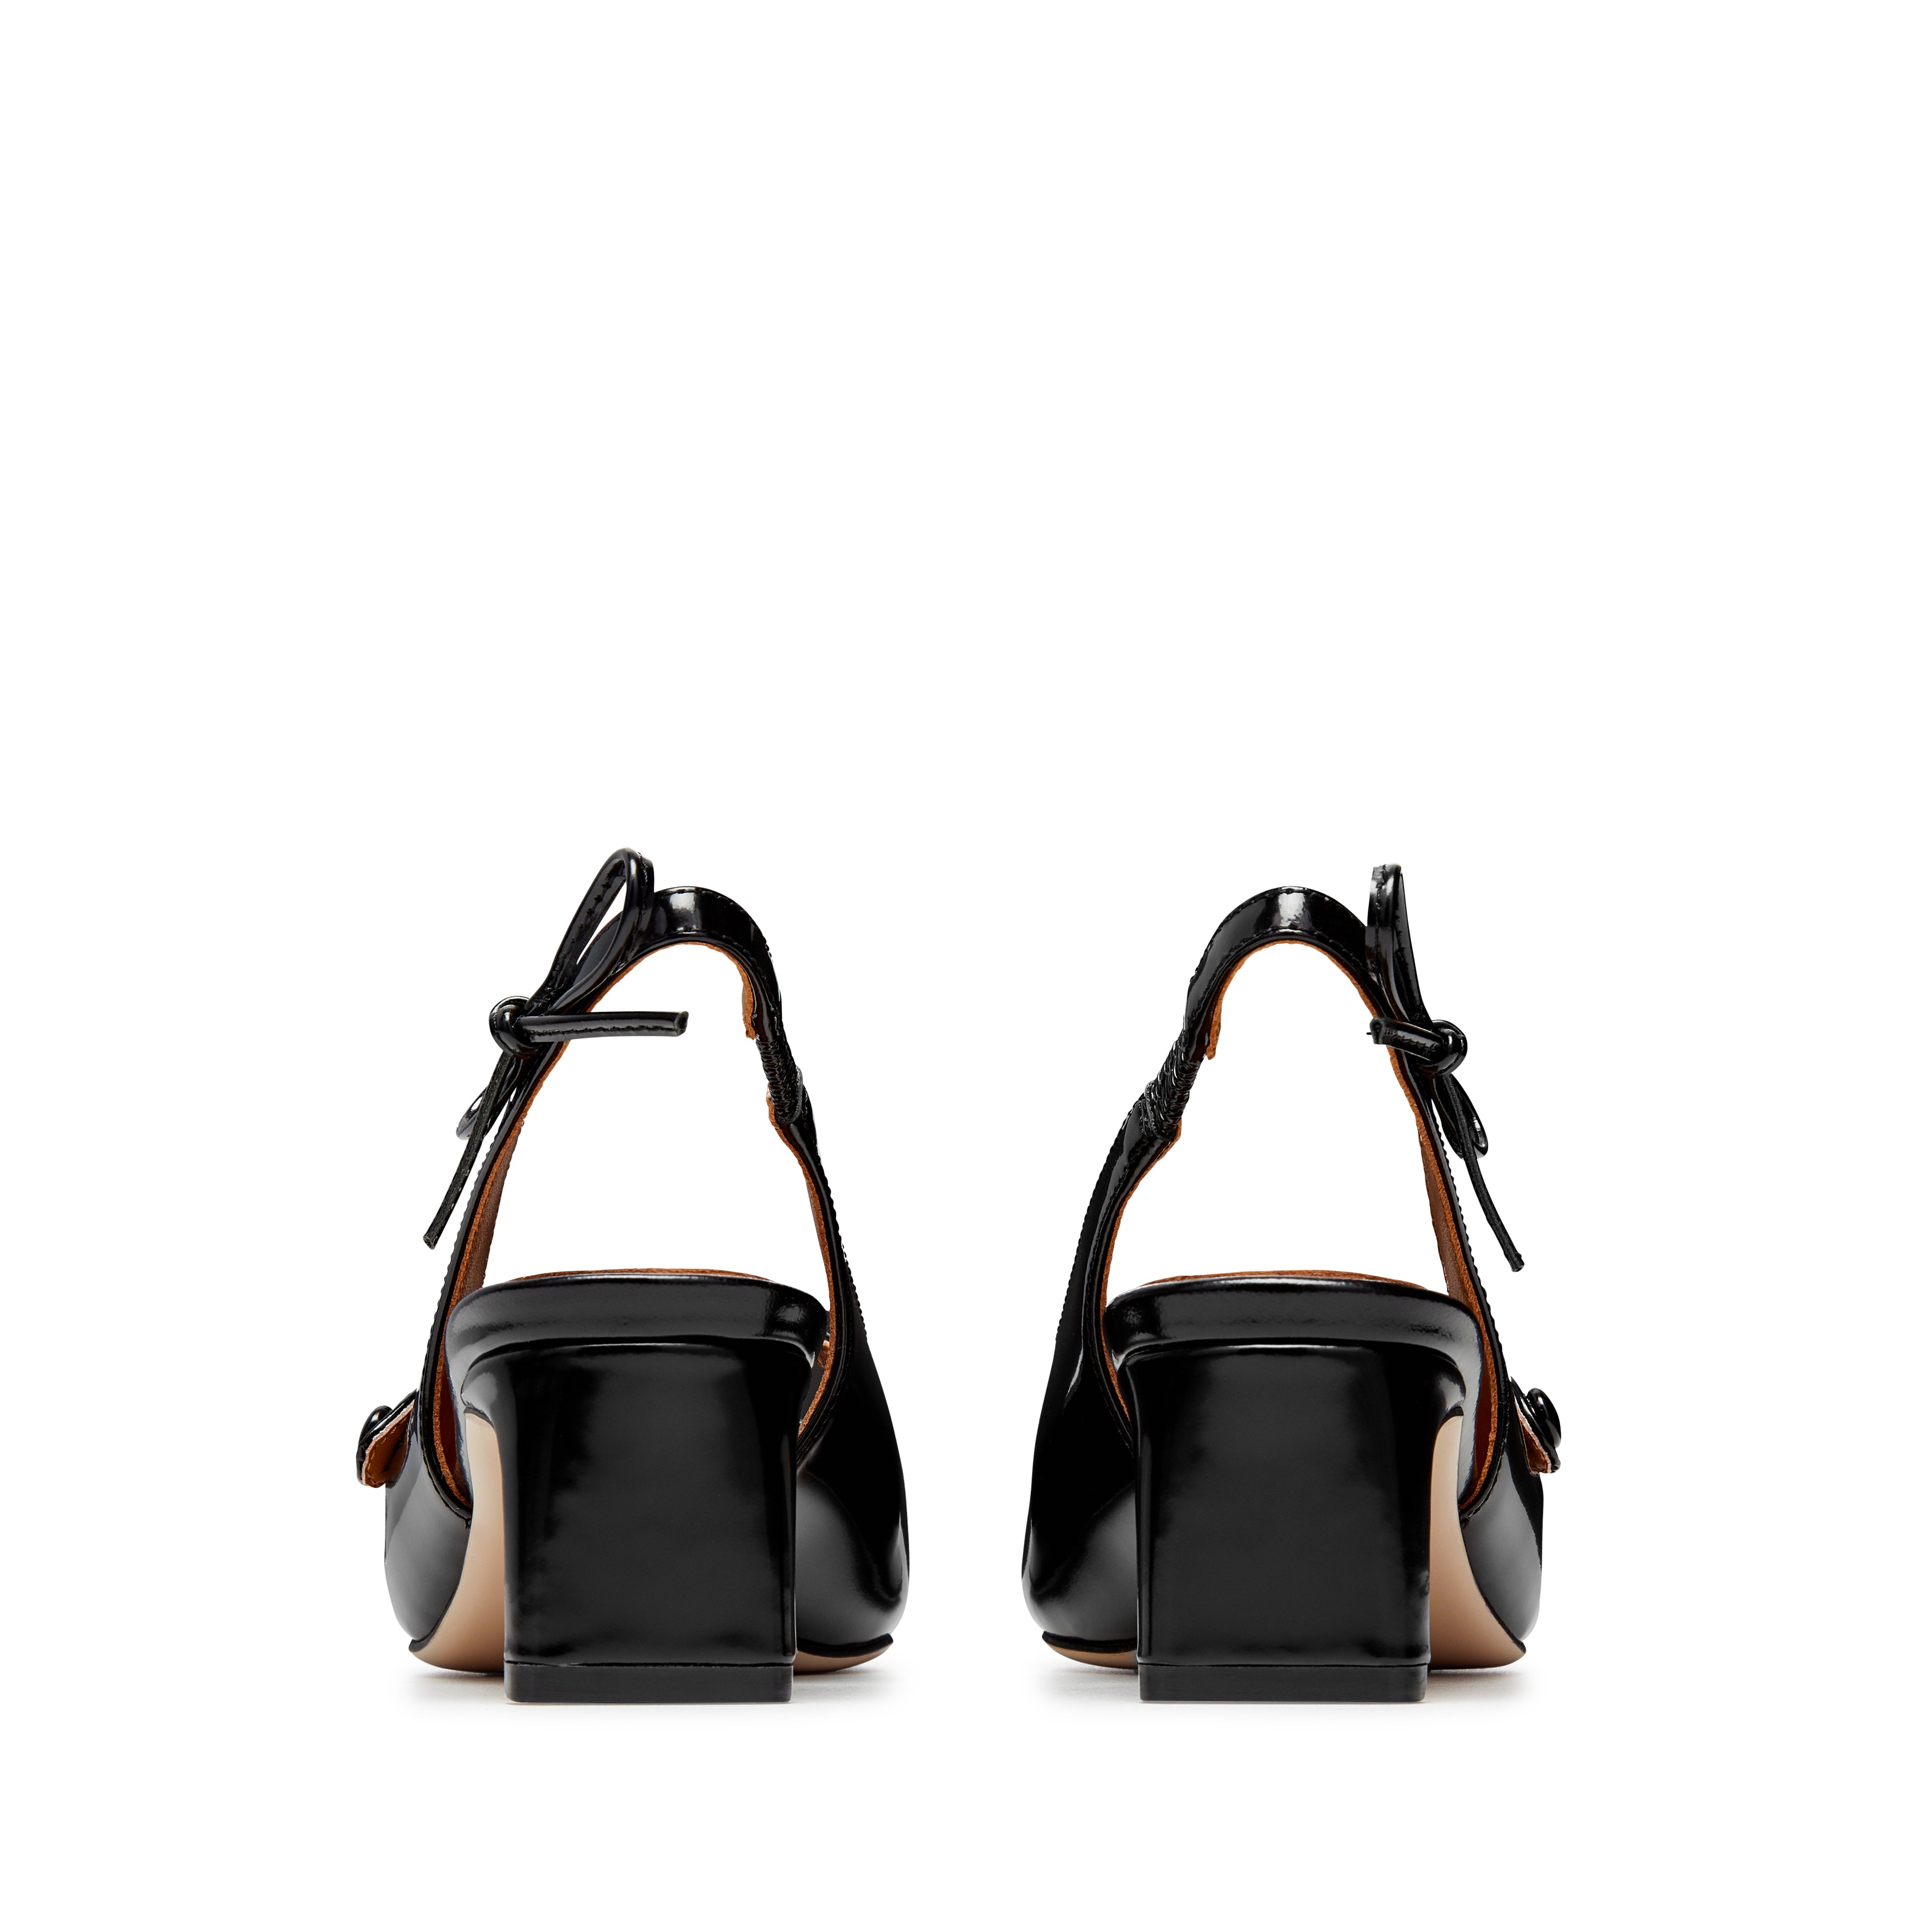 ShuShu/Tong - Women's Bow Detail Heels - (Black)